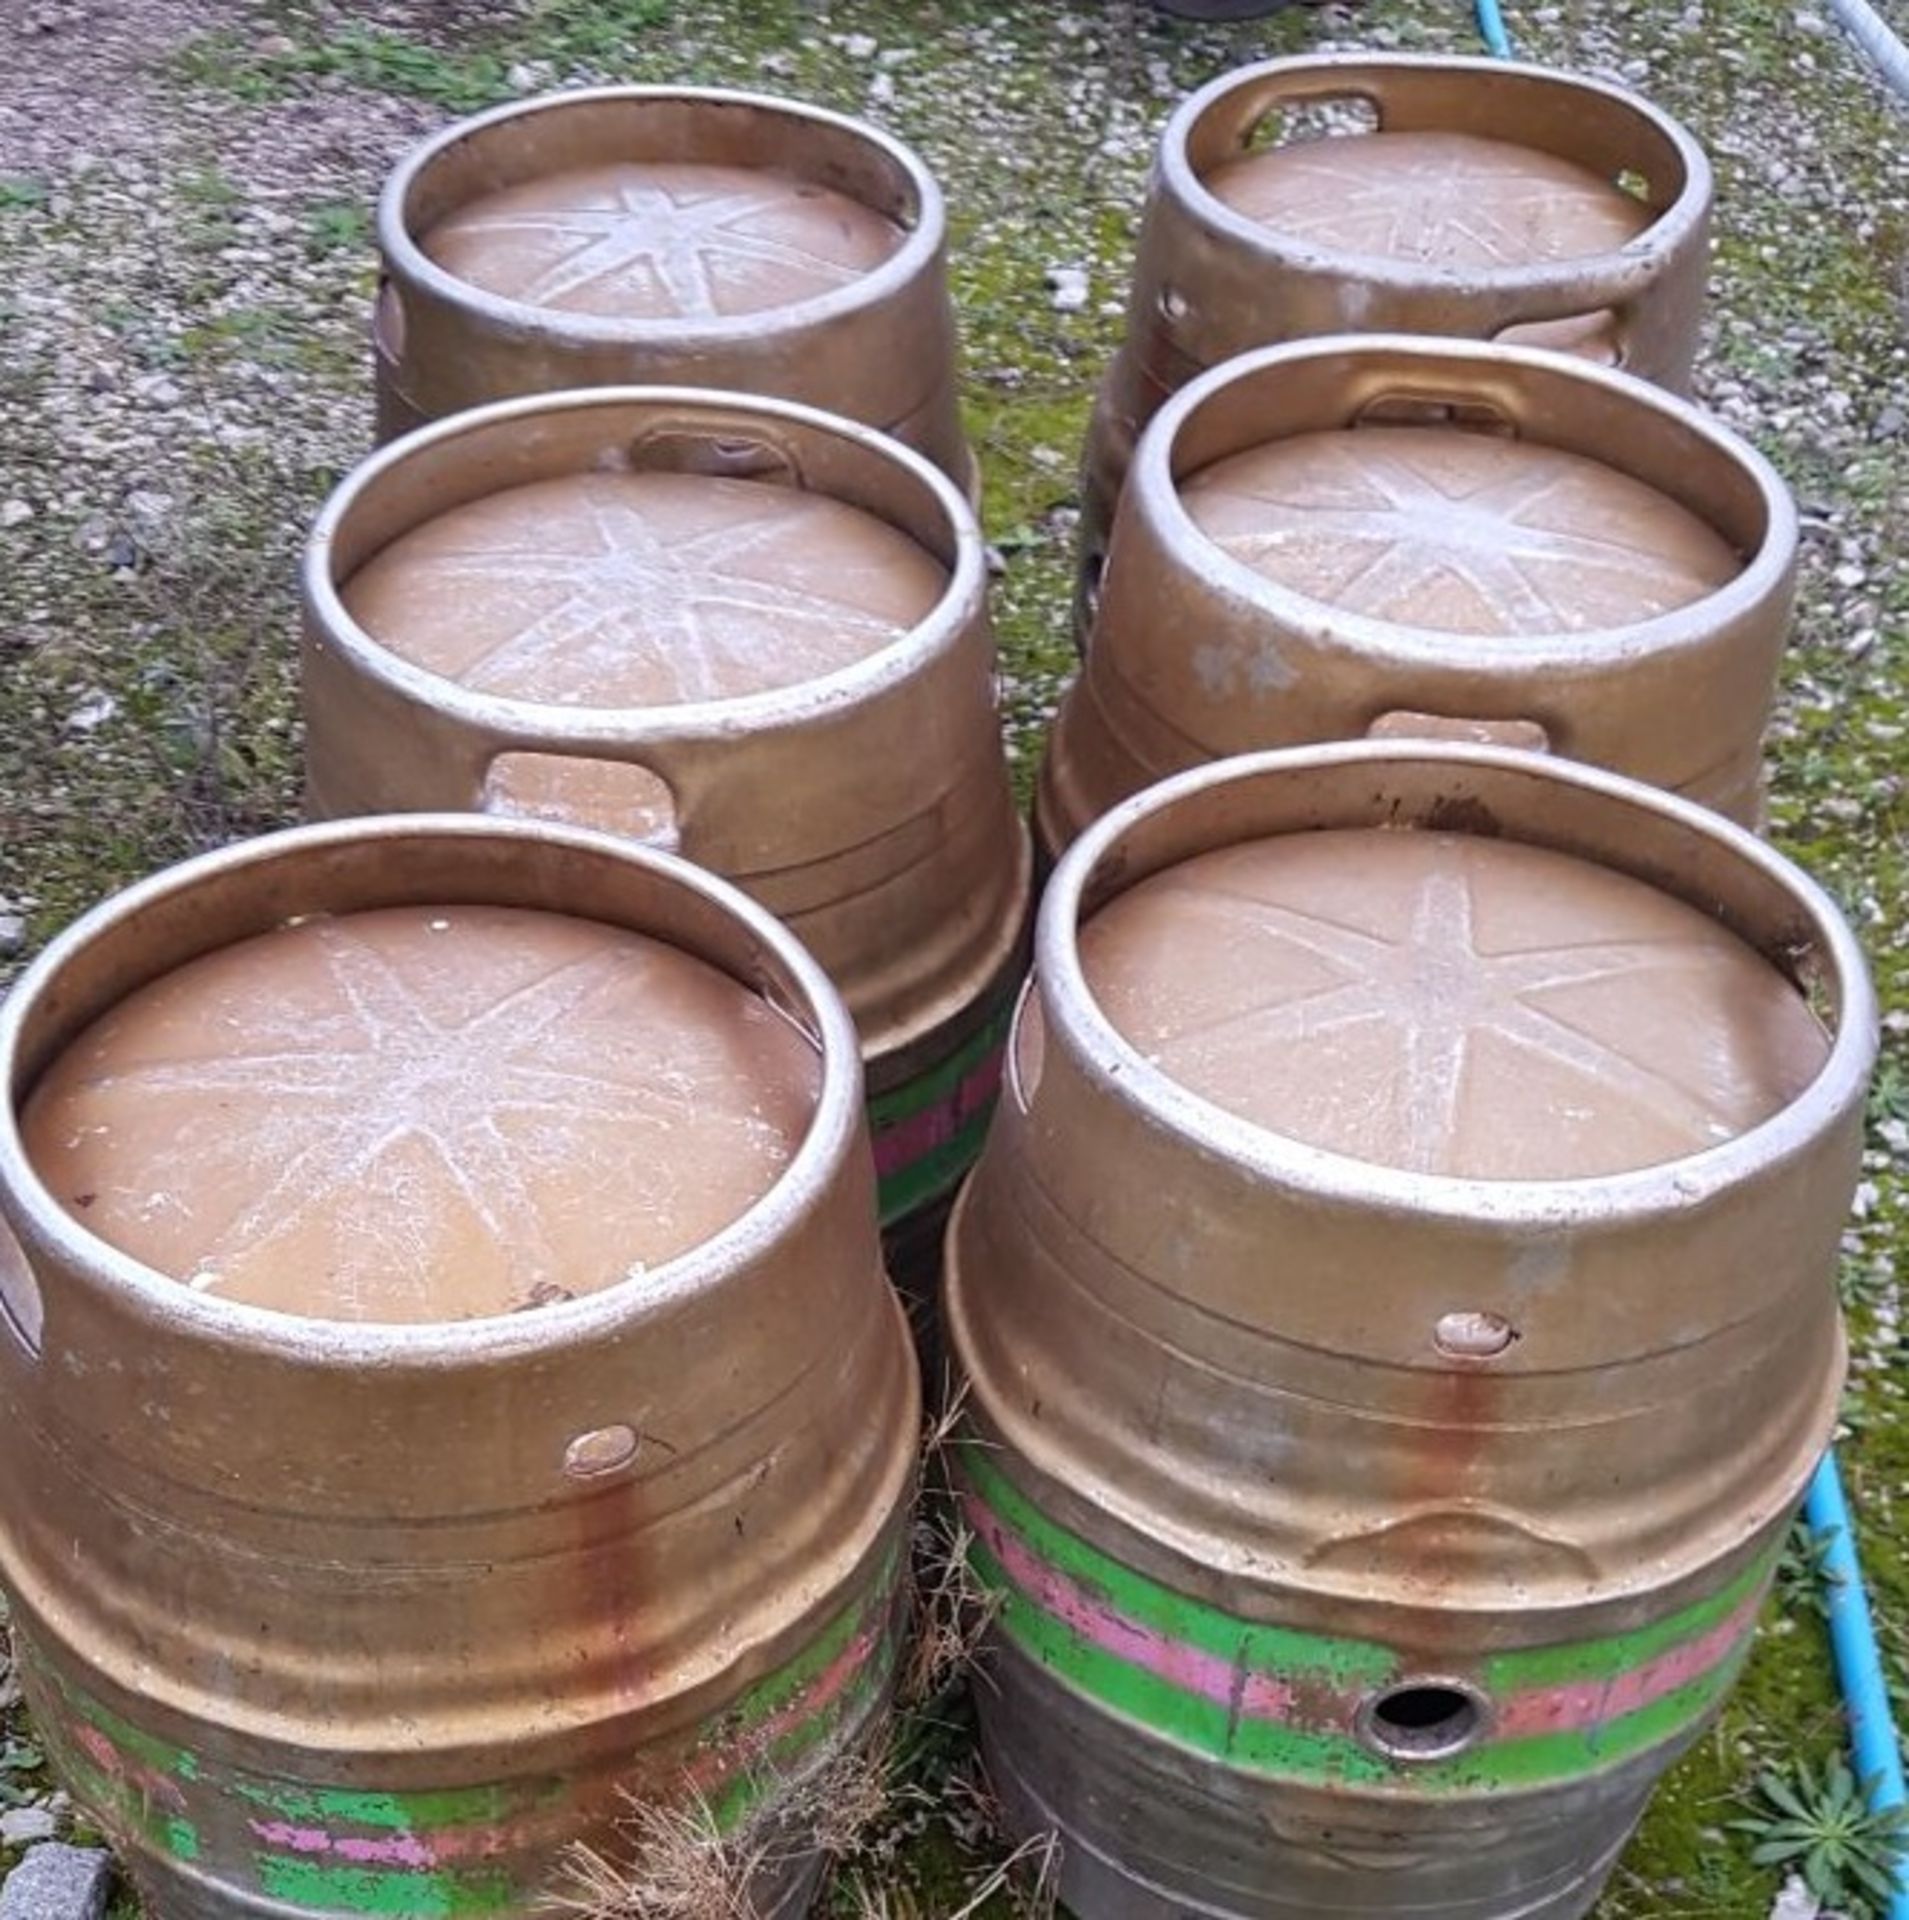 6 Full Size Food Grade Stainless Steel (316) Beer Kegs - Image 2 of 4